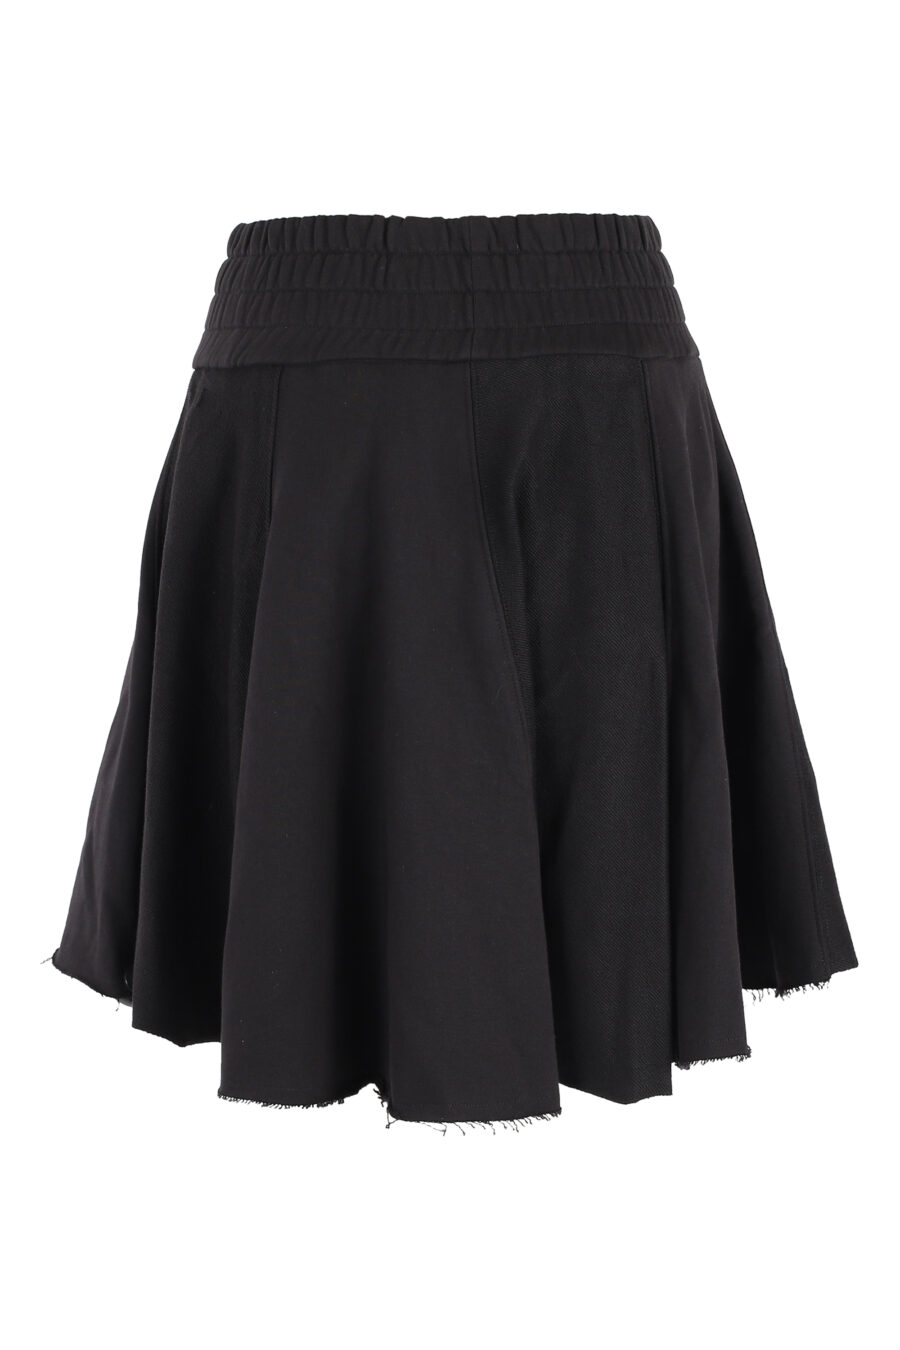 Falda corta negra con logo en cintura - IMG 5094